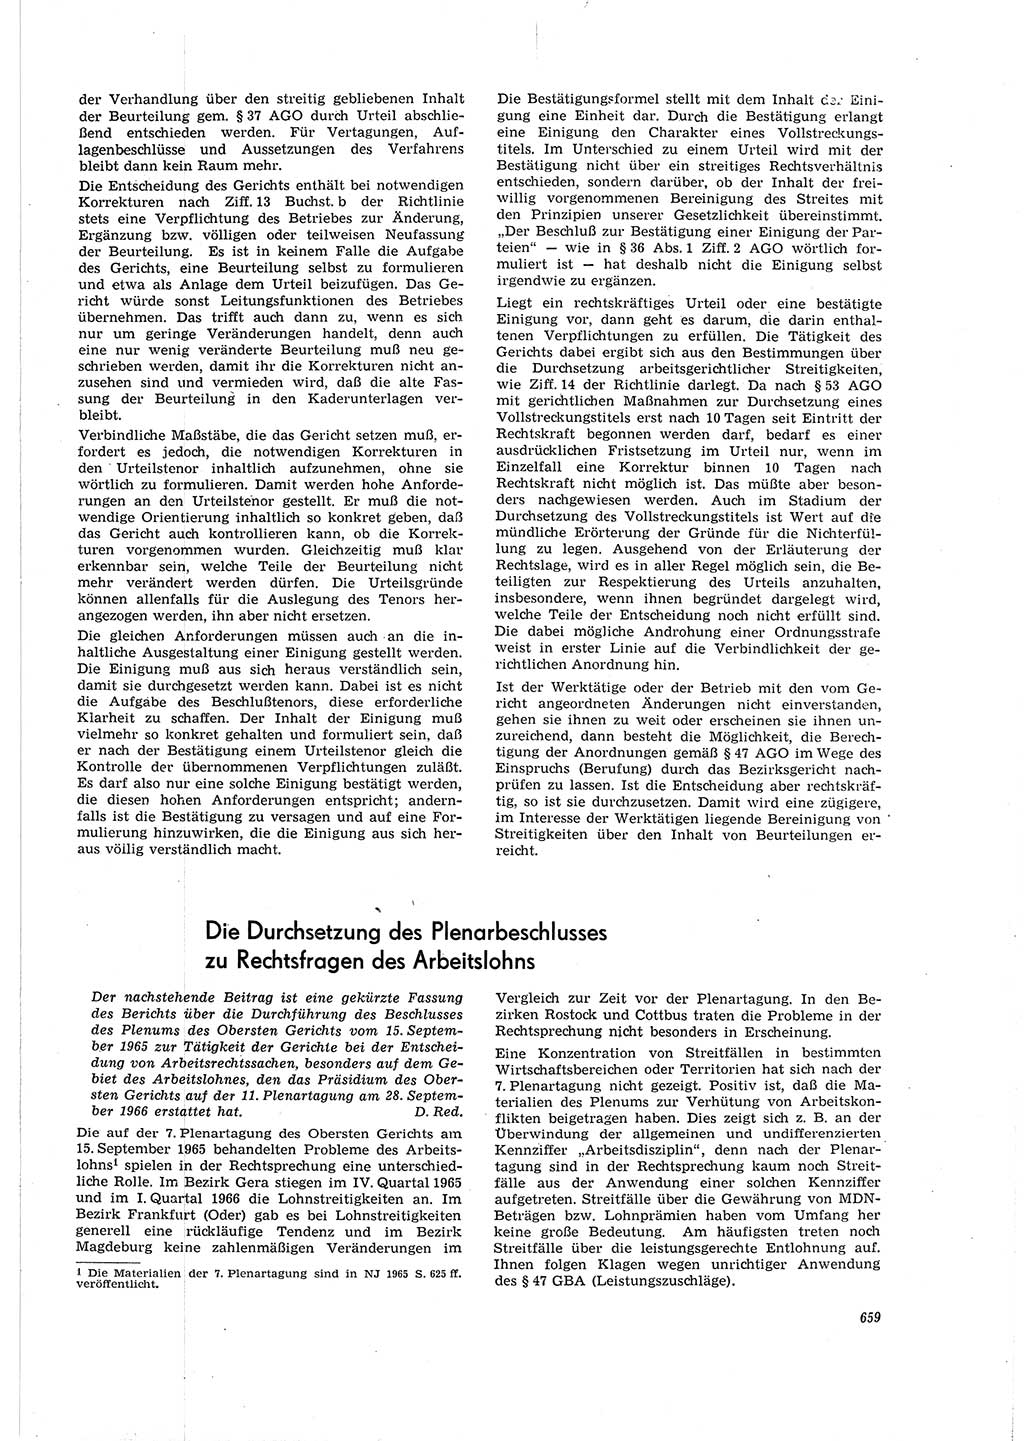 Neue Justiz (NJ), Zeitschrift für Recht und Rechtswissenschaft [Deutsche Demokratische Republik (DDR)], 20. Jahrgang 1966, Seite 659 (NJ DDR 1966, S. 659)